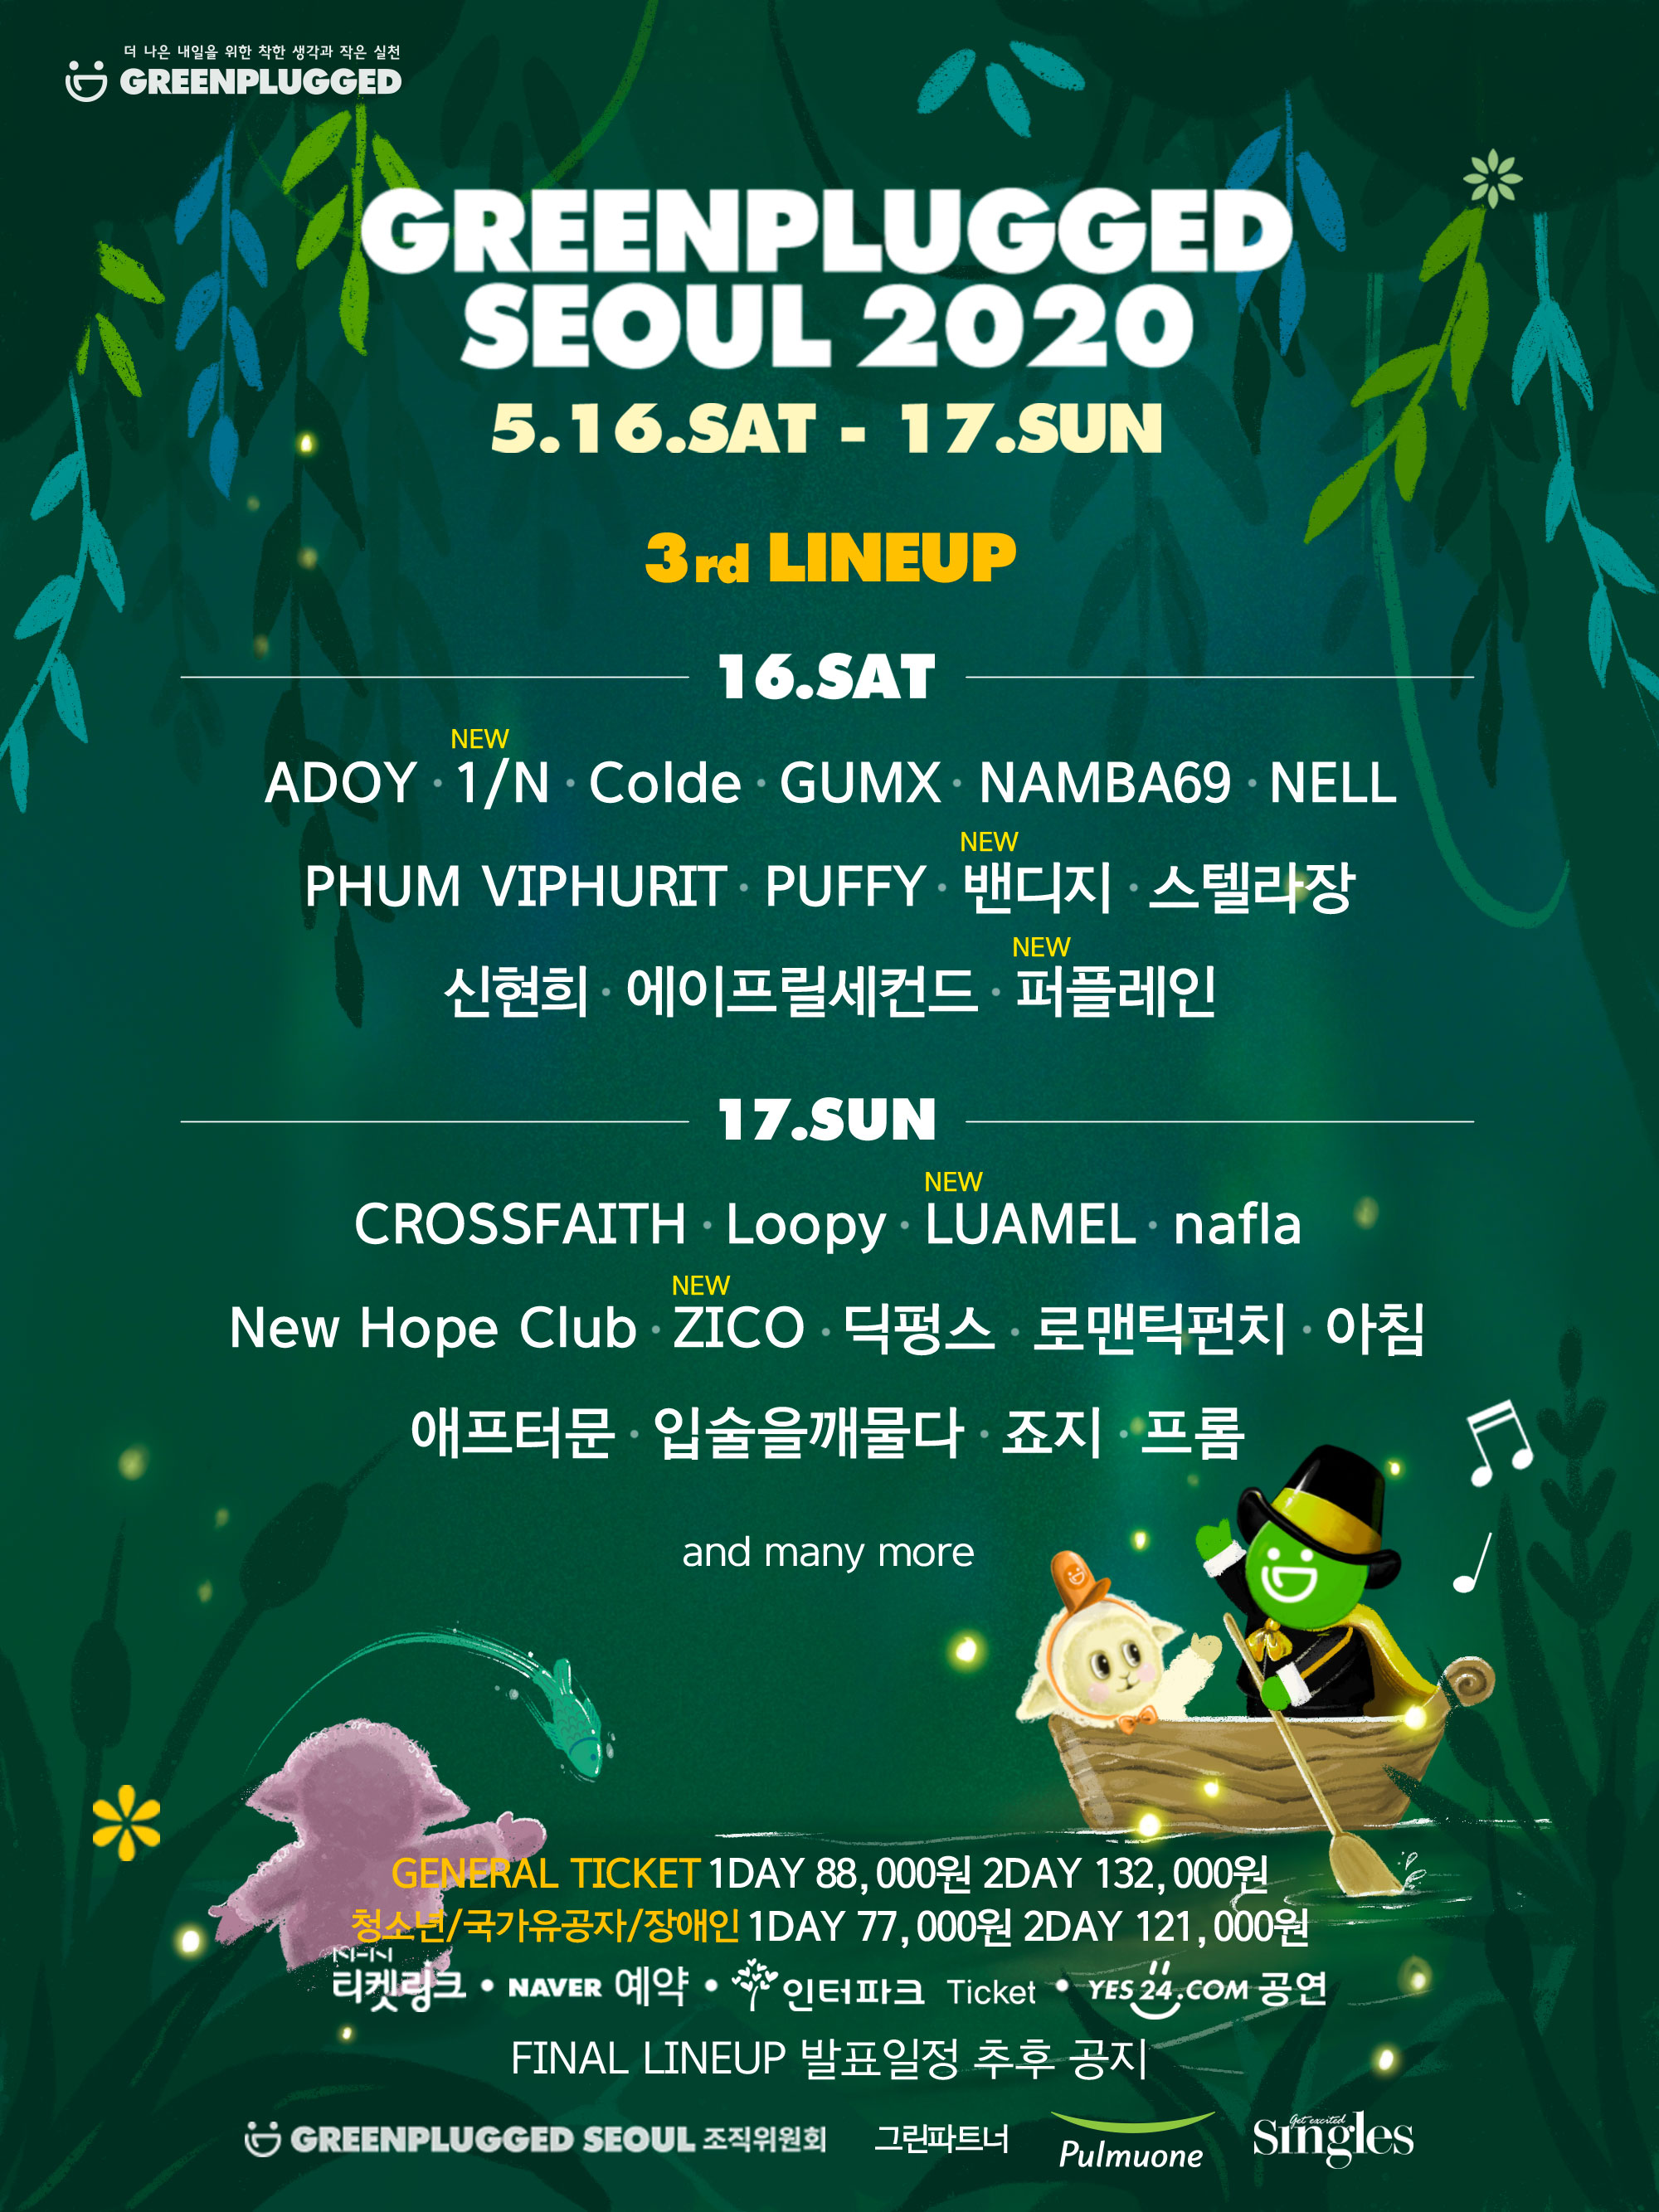 환경 캠페인 뮤직 페스티벌 <그린플러그드 서울 2020>, 3차 라인업 발표